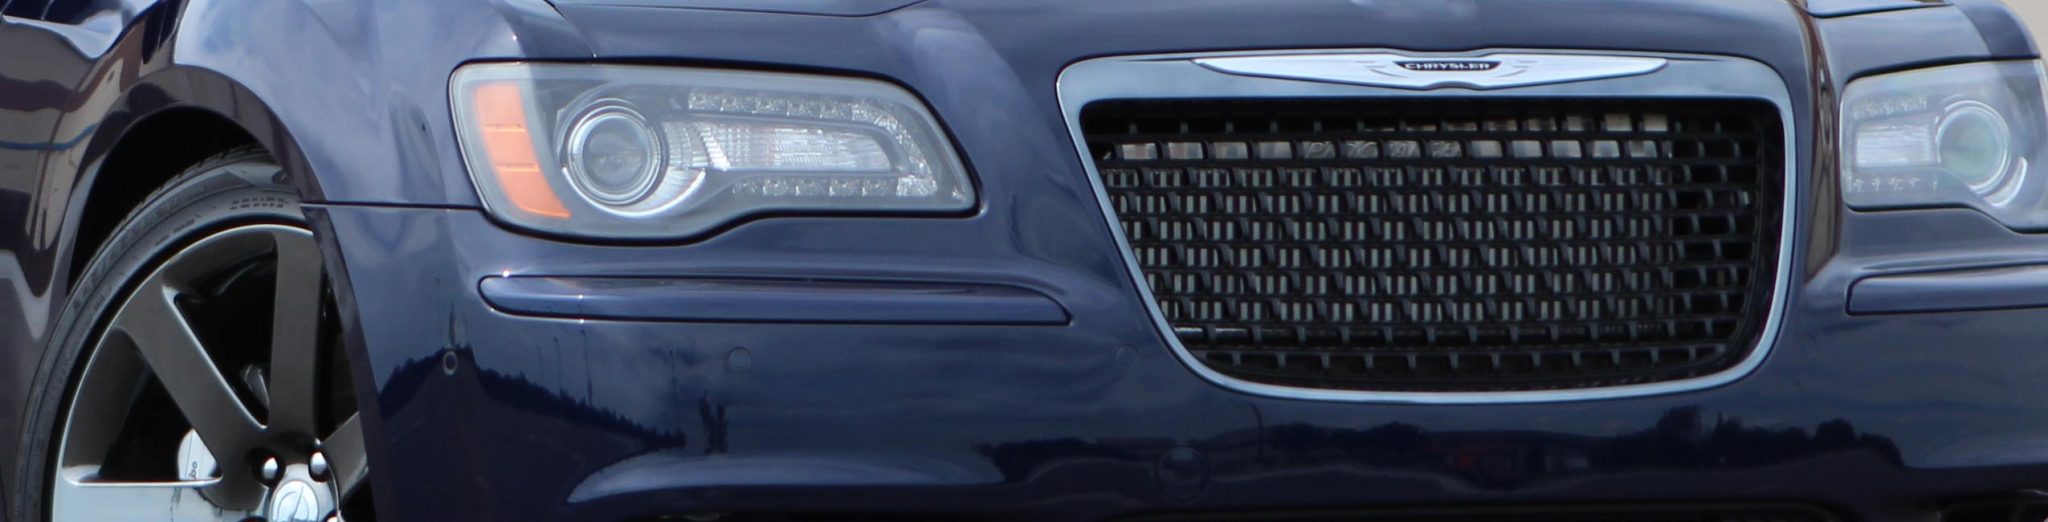 2011-14 Chrysler 300C Hemi (5.7)